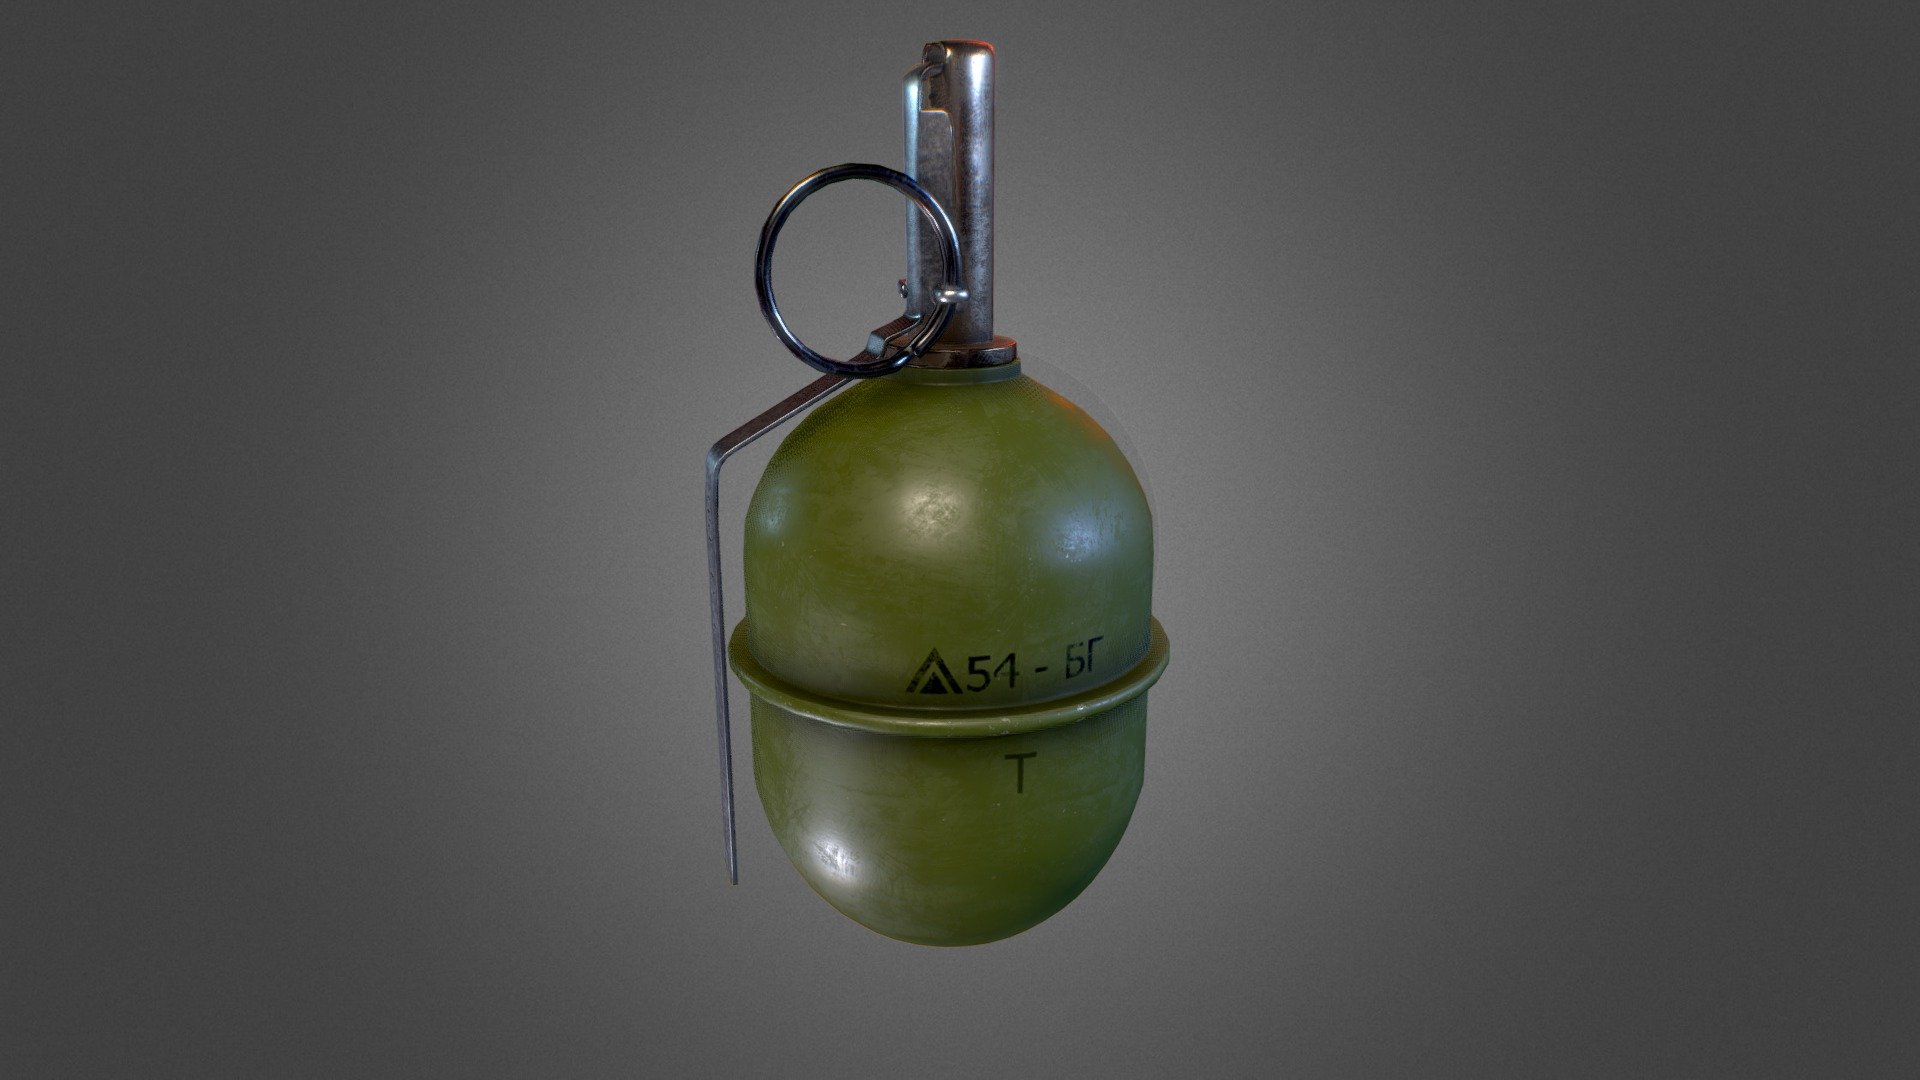 rgd 5 grenade